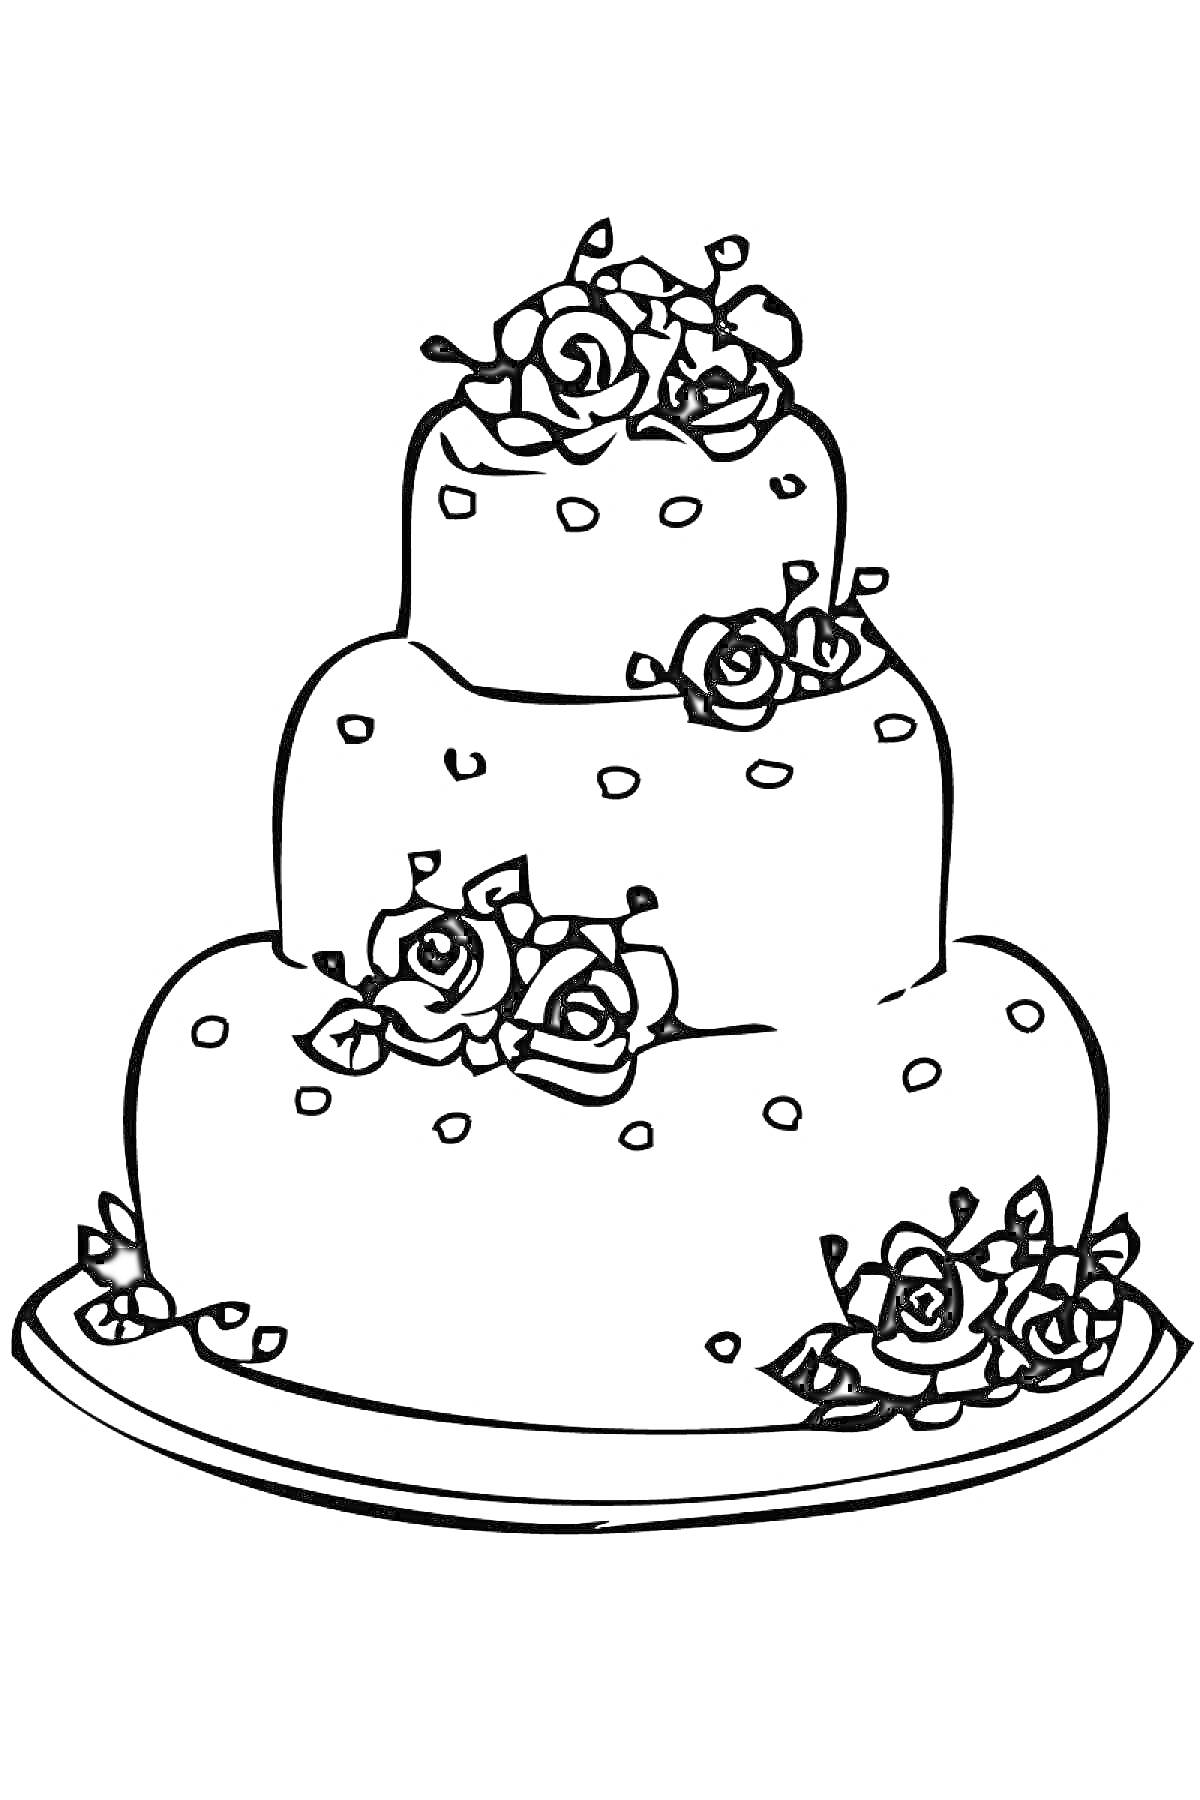 Раскраска Трехуровневый торт с кремовыми розами на тарелке